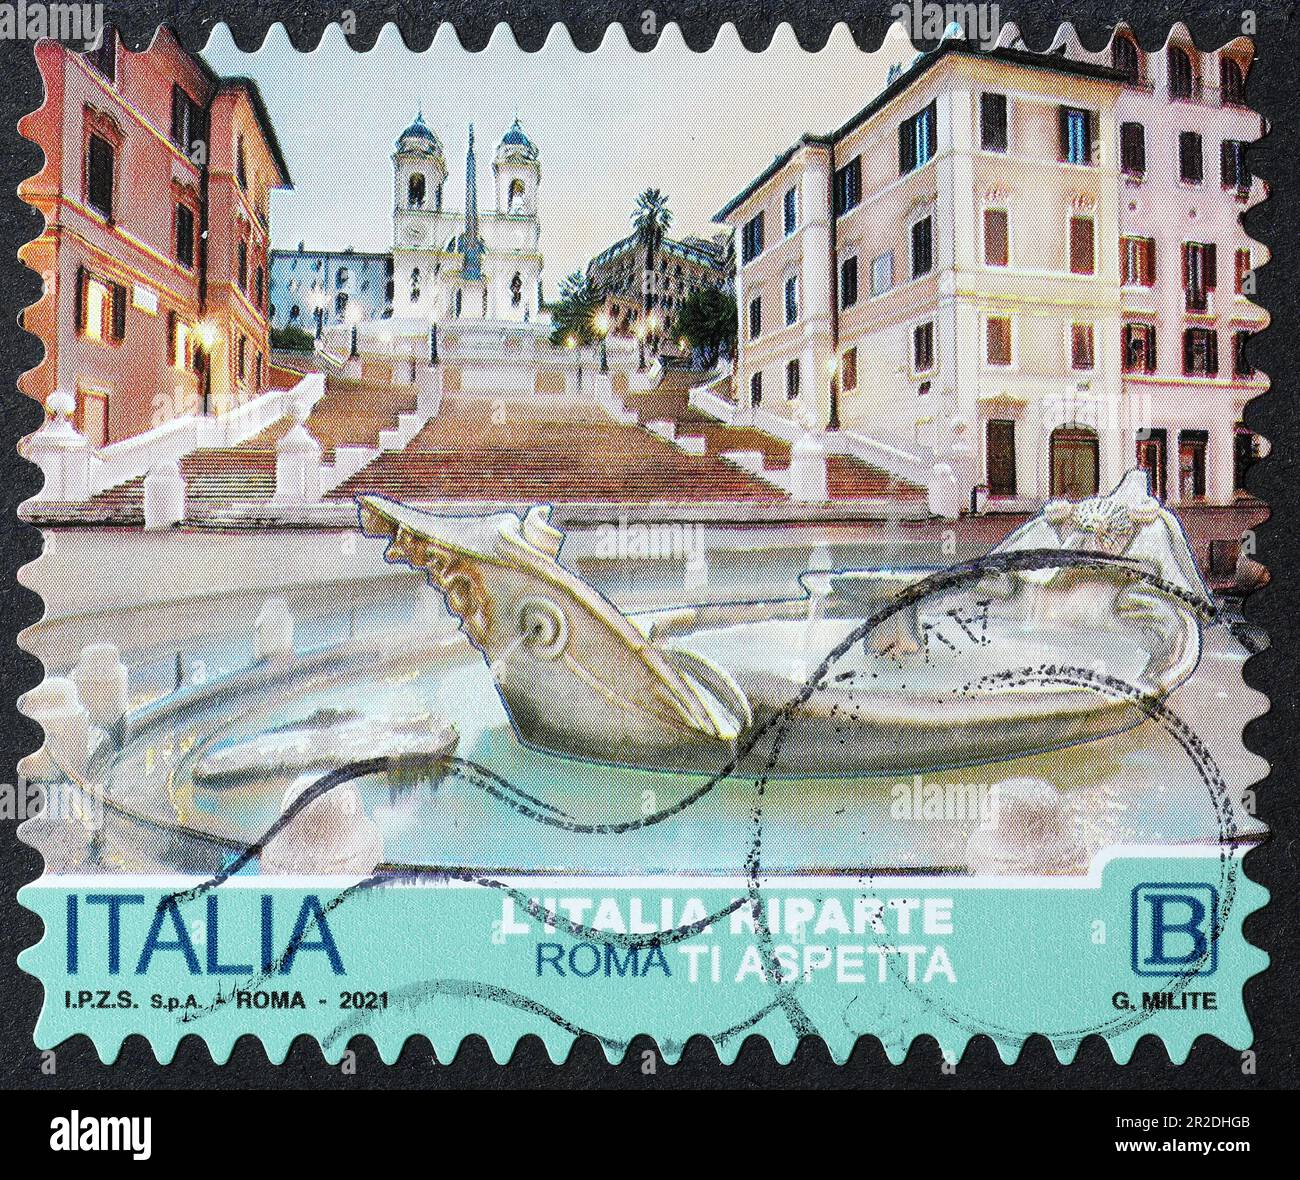 Fontana della Barcaccia in Rome on italian stamp Stock Photo